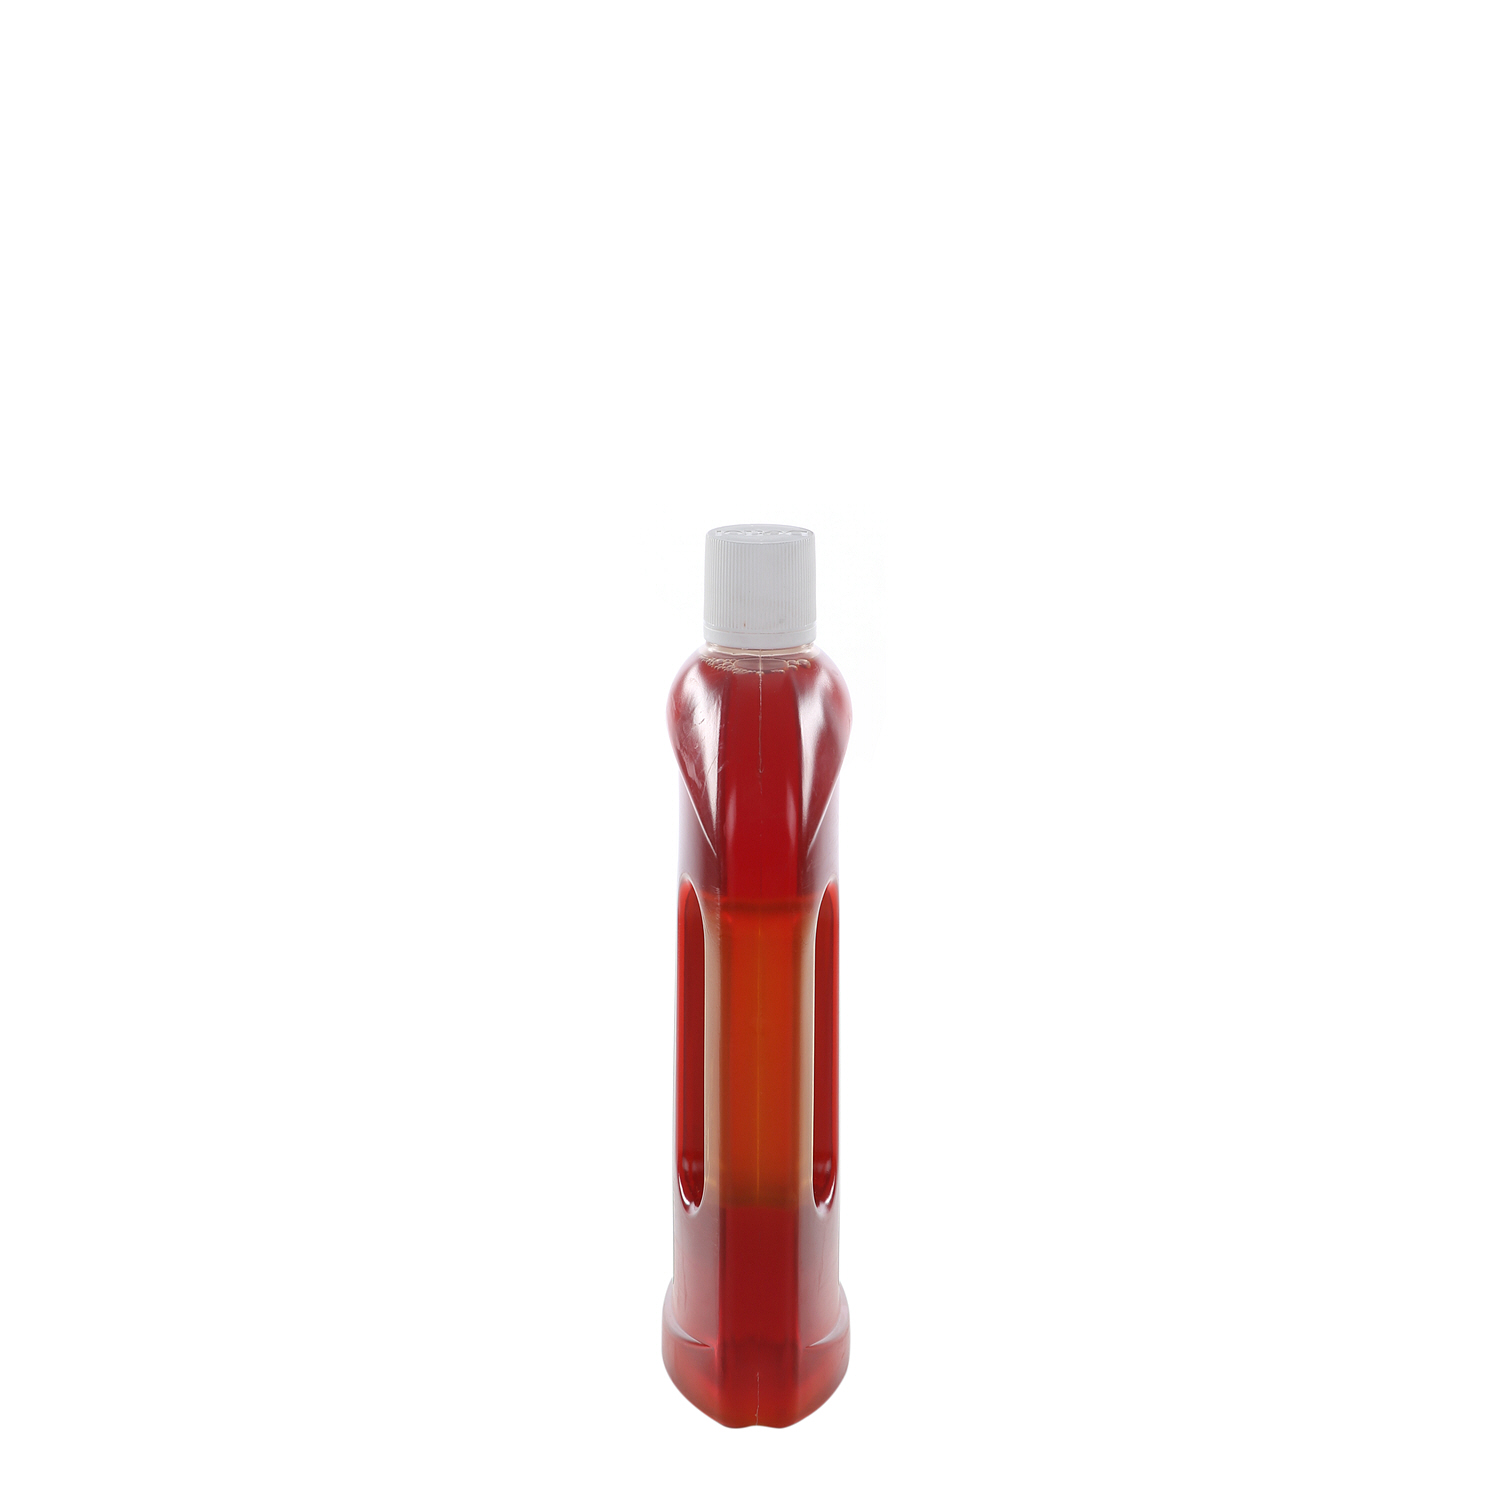 Dettol Anti-Bacterial Disinfectant Liquid 750 ml